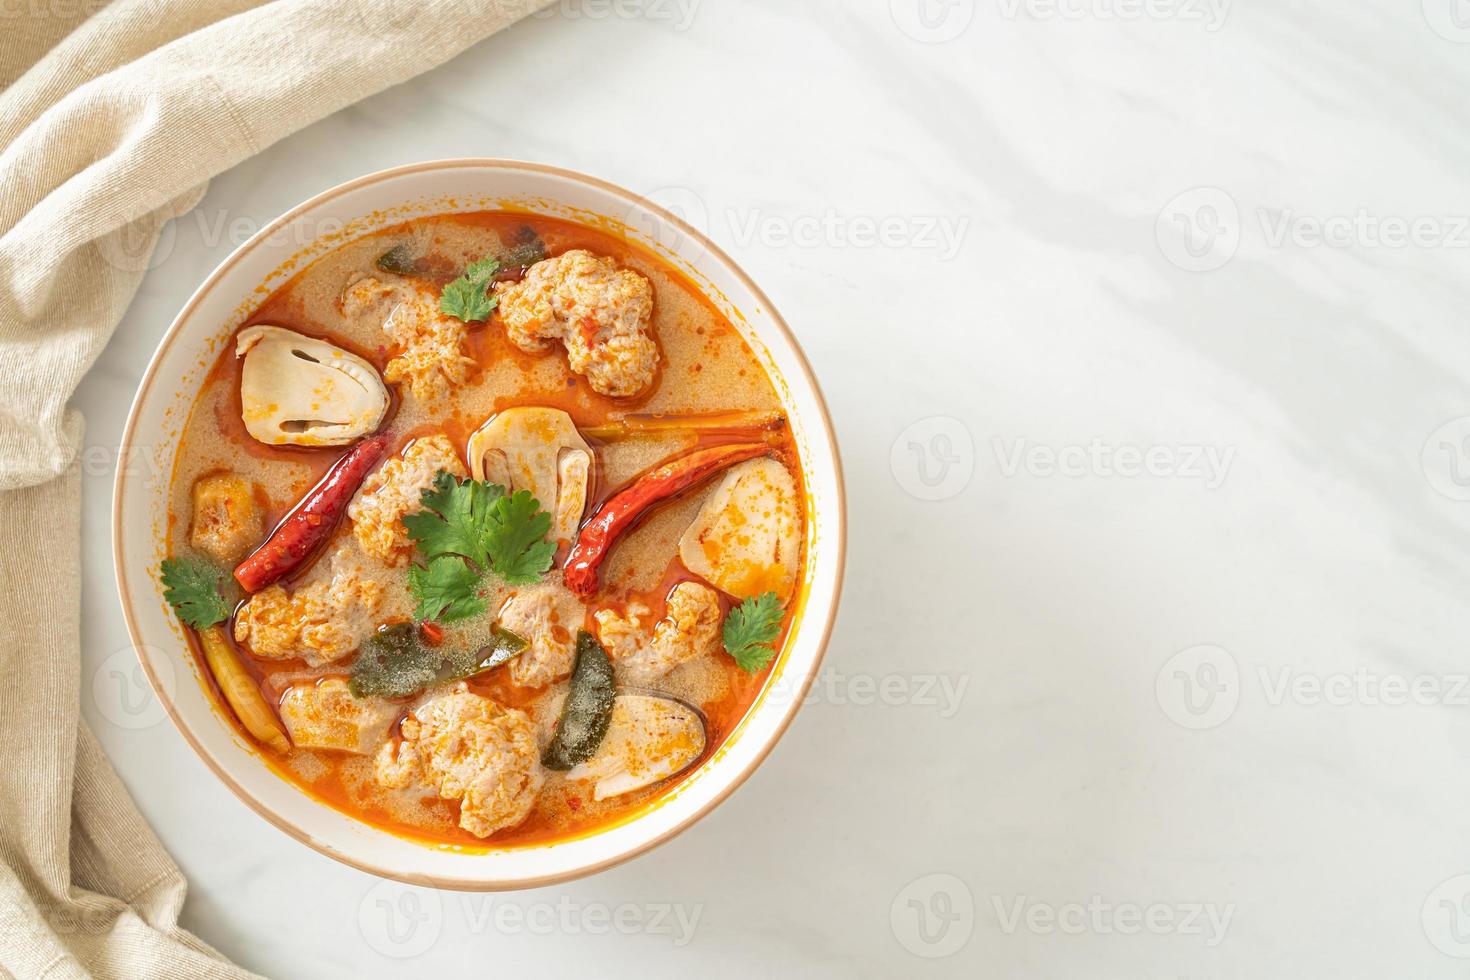 soupe épicée de porc bouilli aux champignons - tom yum - style de cuisine asiatique photo